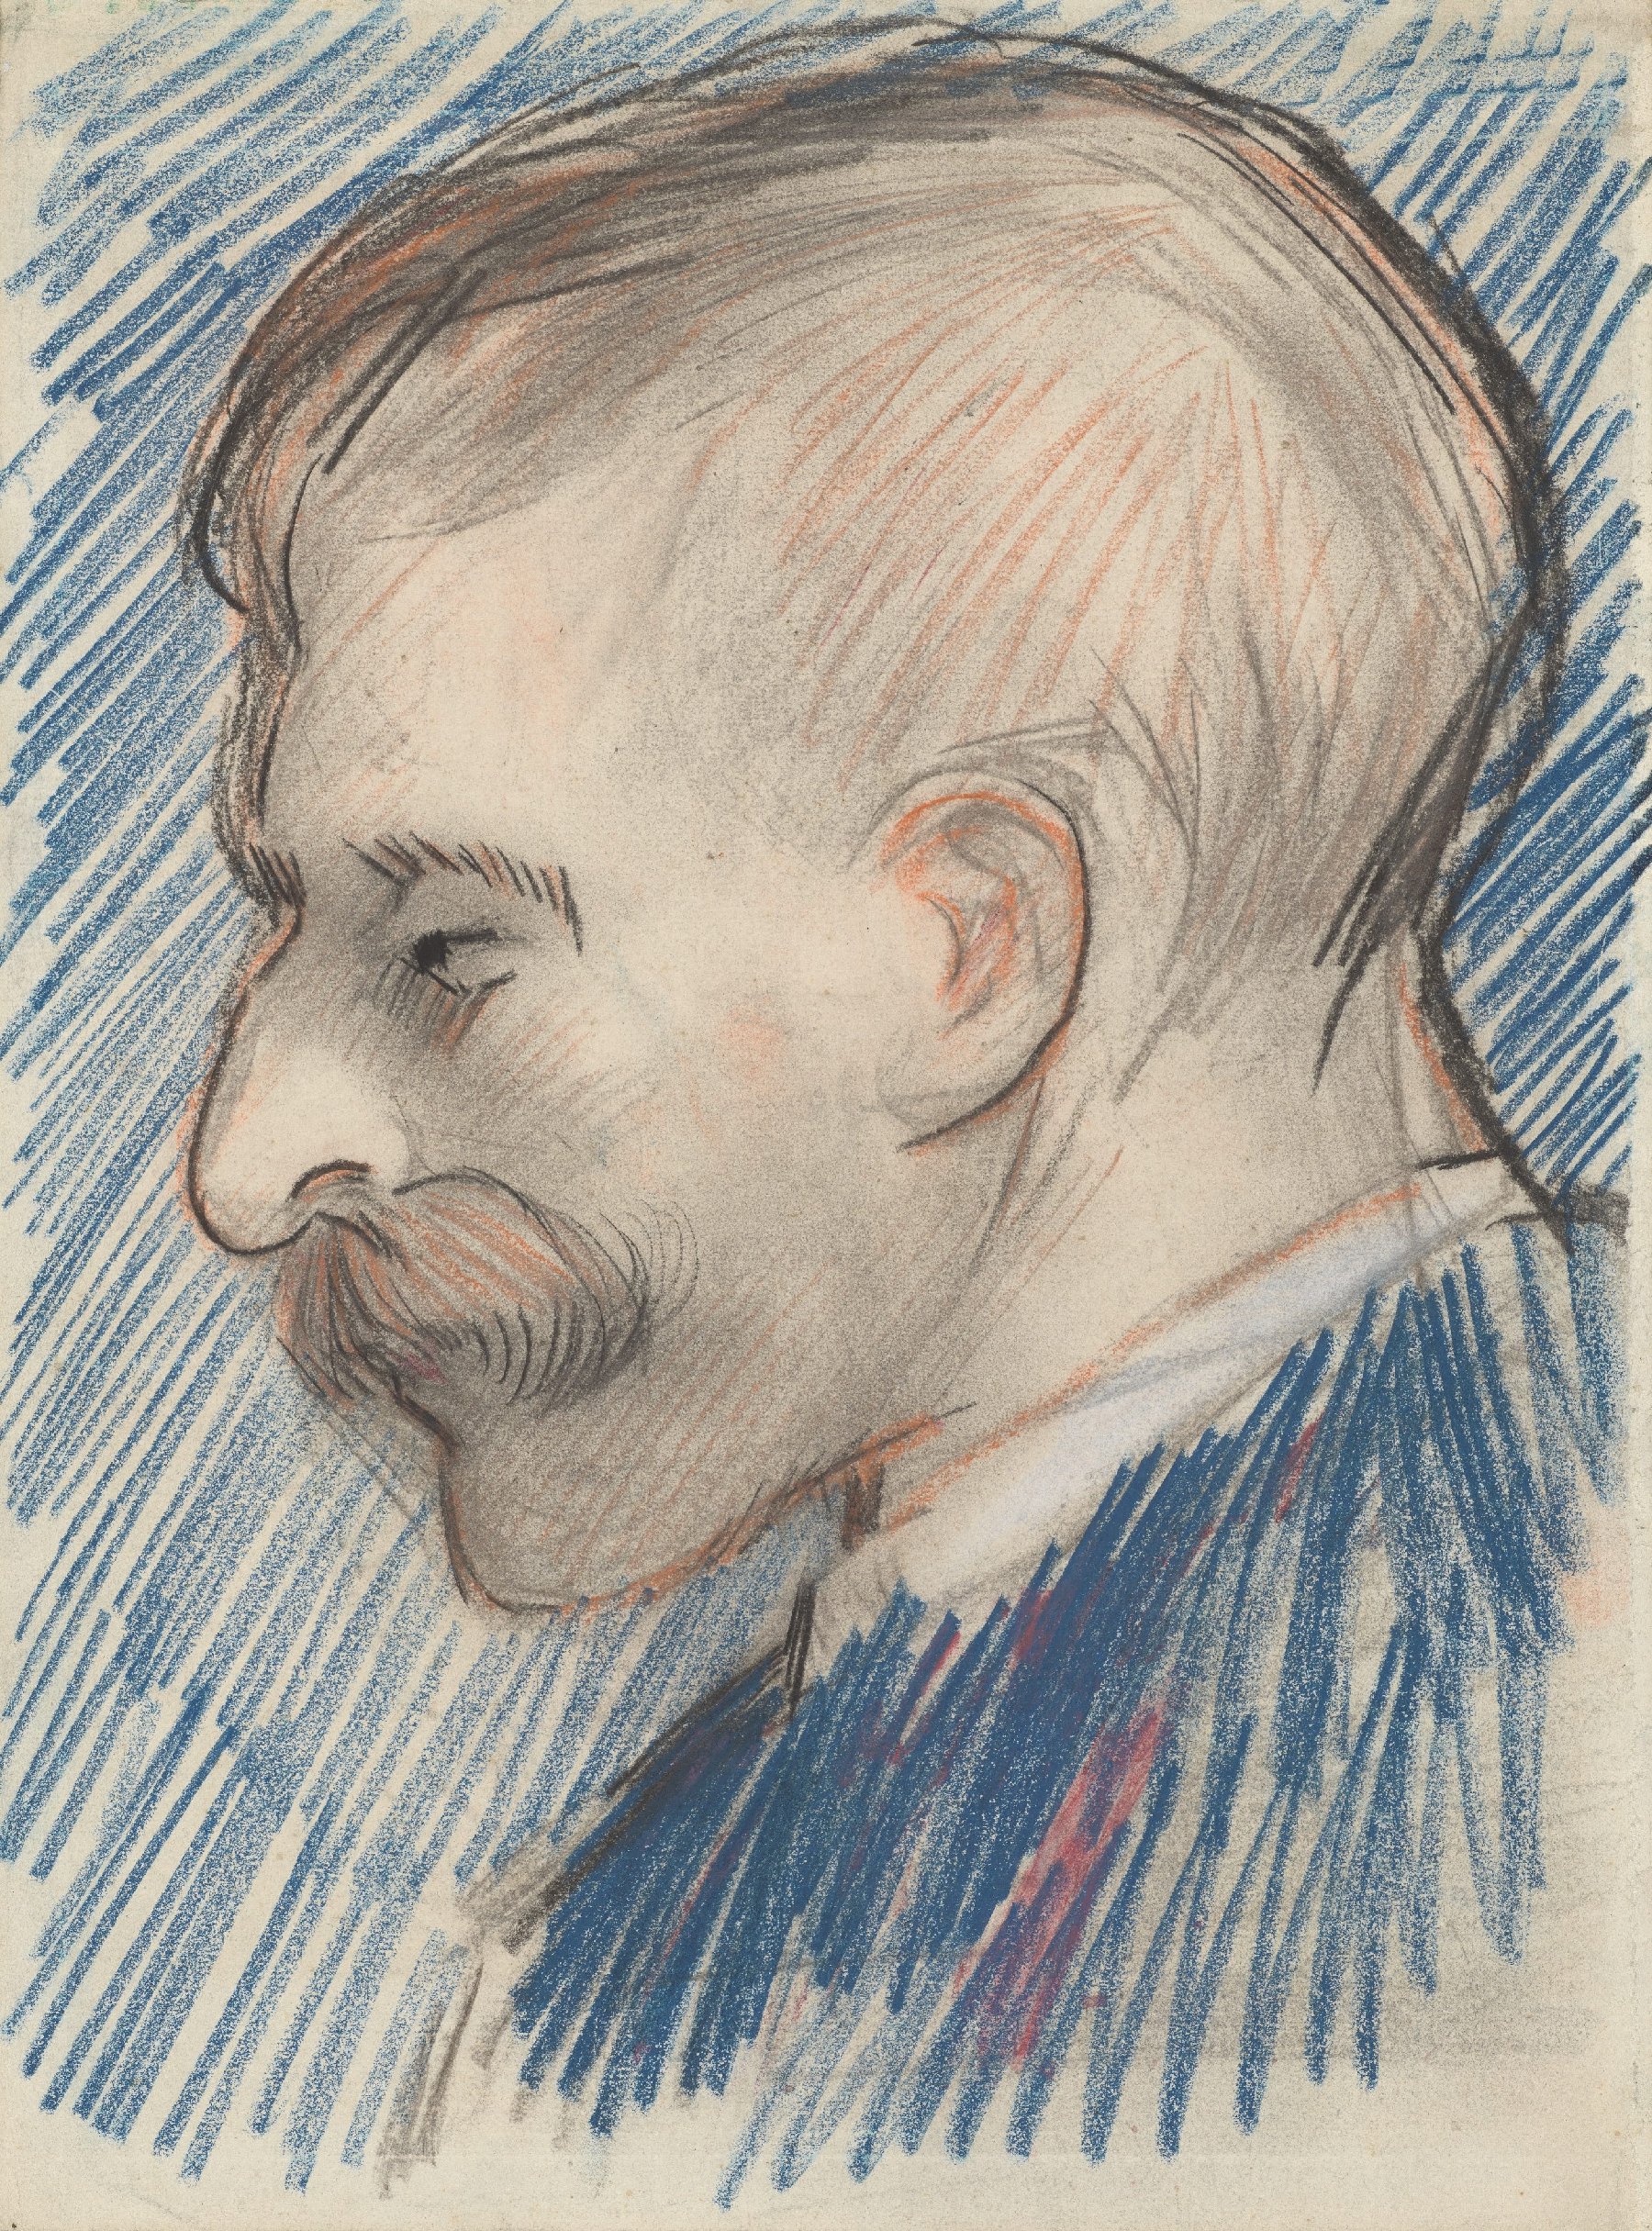 Kop van een man (vermoedelijk Theo van Gogh) Vincent van Gogh (1853 - 1890), Parijs, januari-april 1887